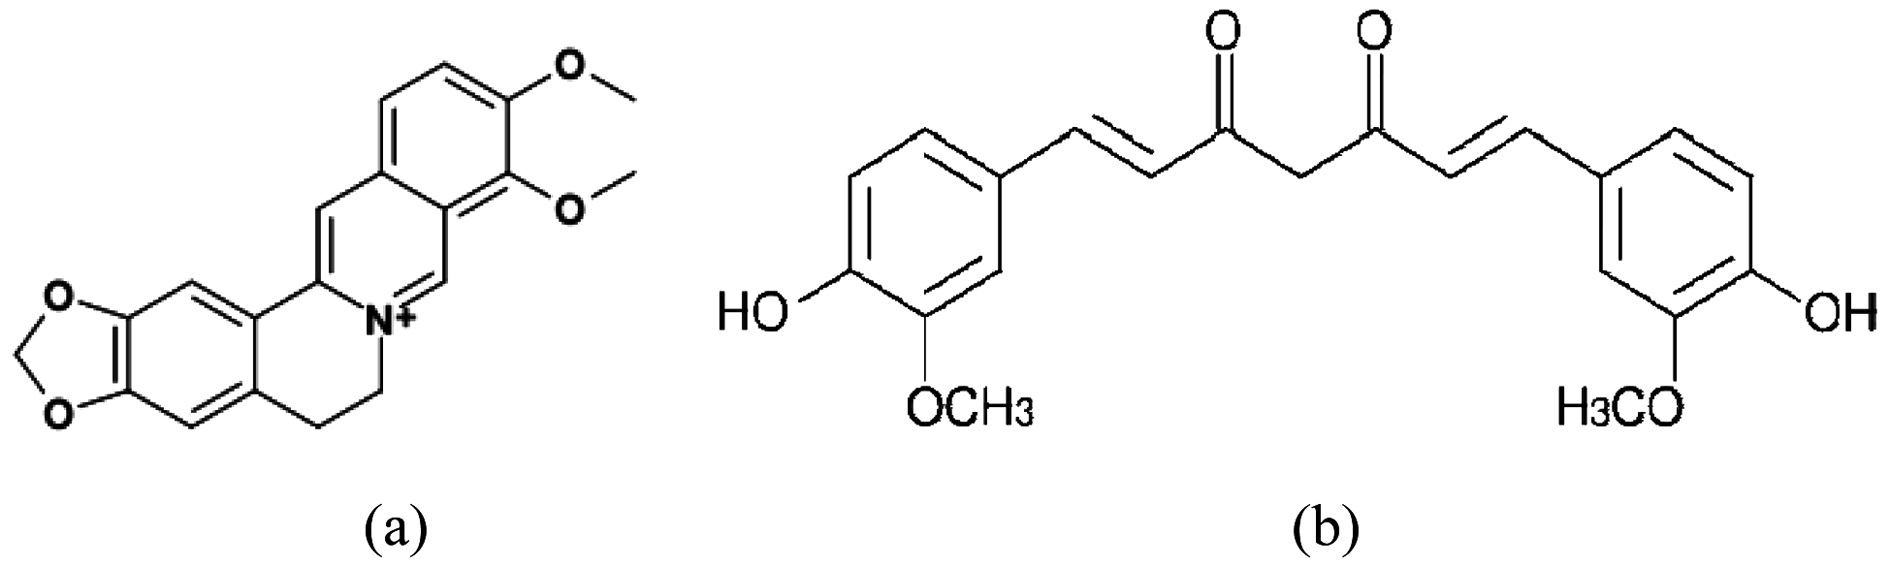 Representative chemical structures of berberine (a) and curcumin
(b) in Coptis and Curcuma.